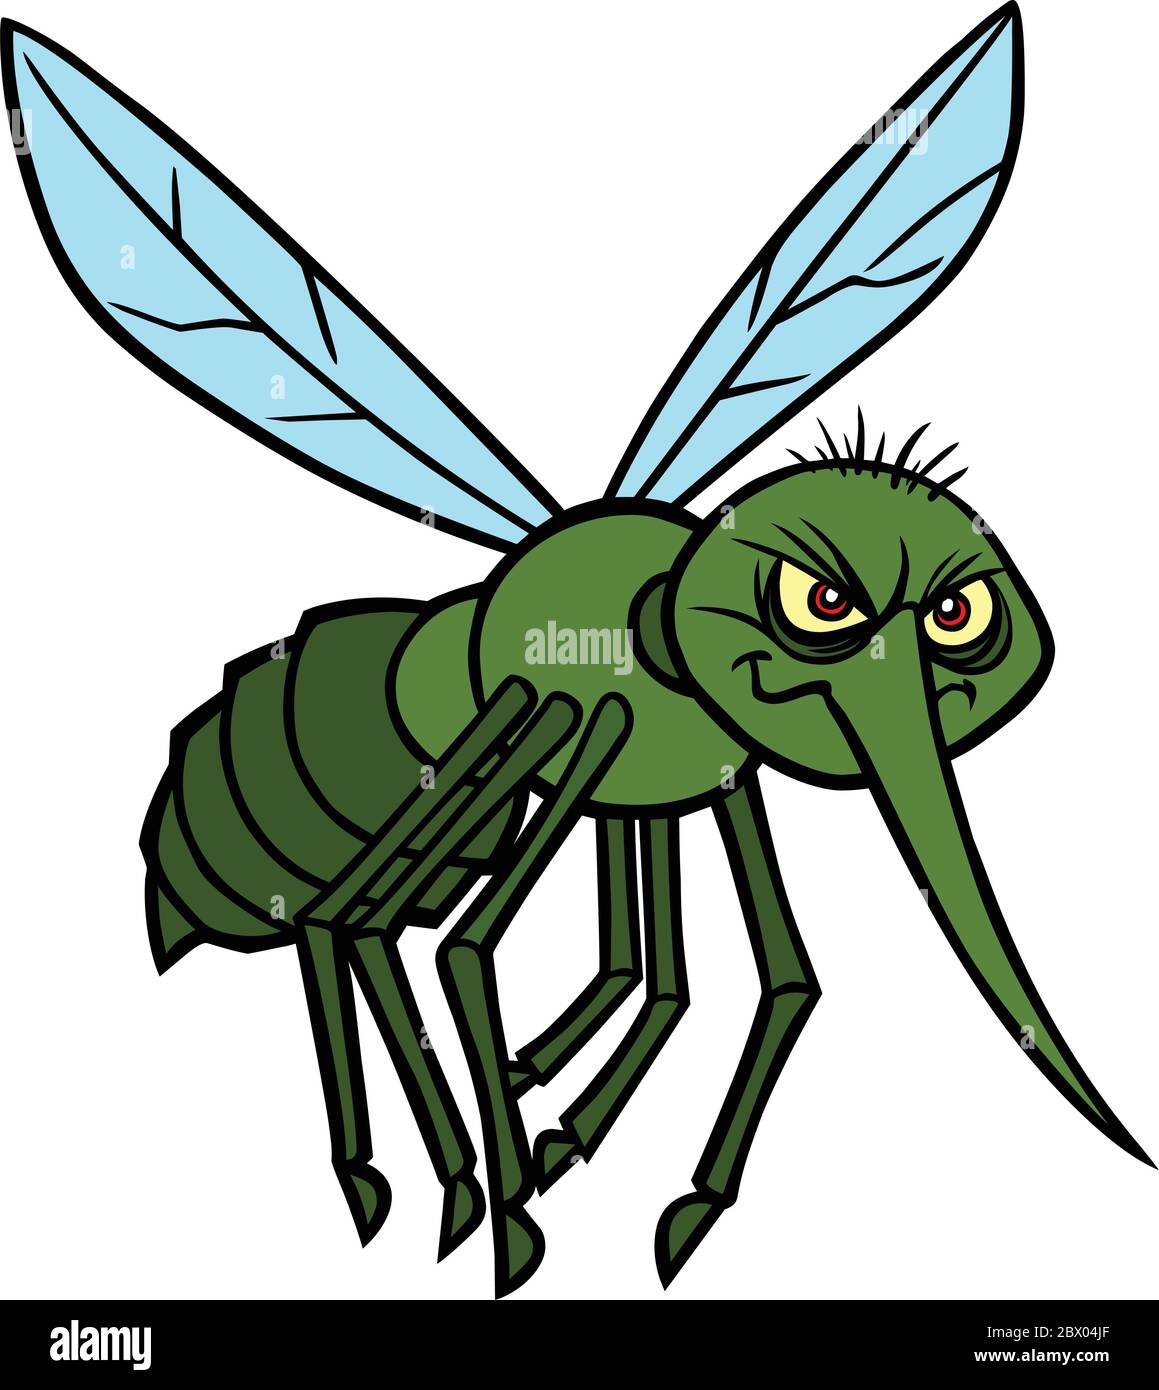 Attaque de moustiquaire - UN dessin-animé Illustration d'une attaque de moustiquaire. Illustration de Vecteur